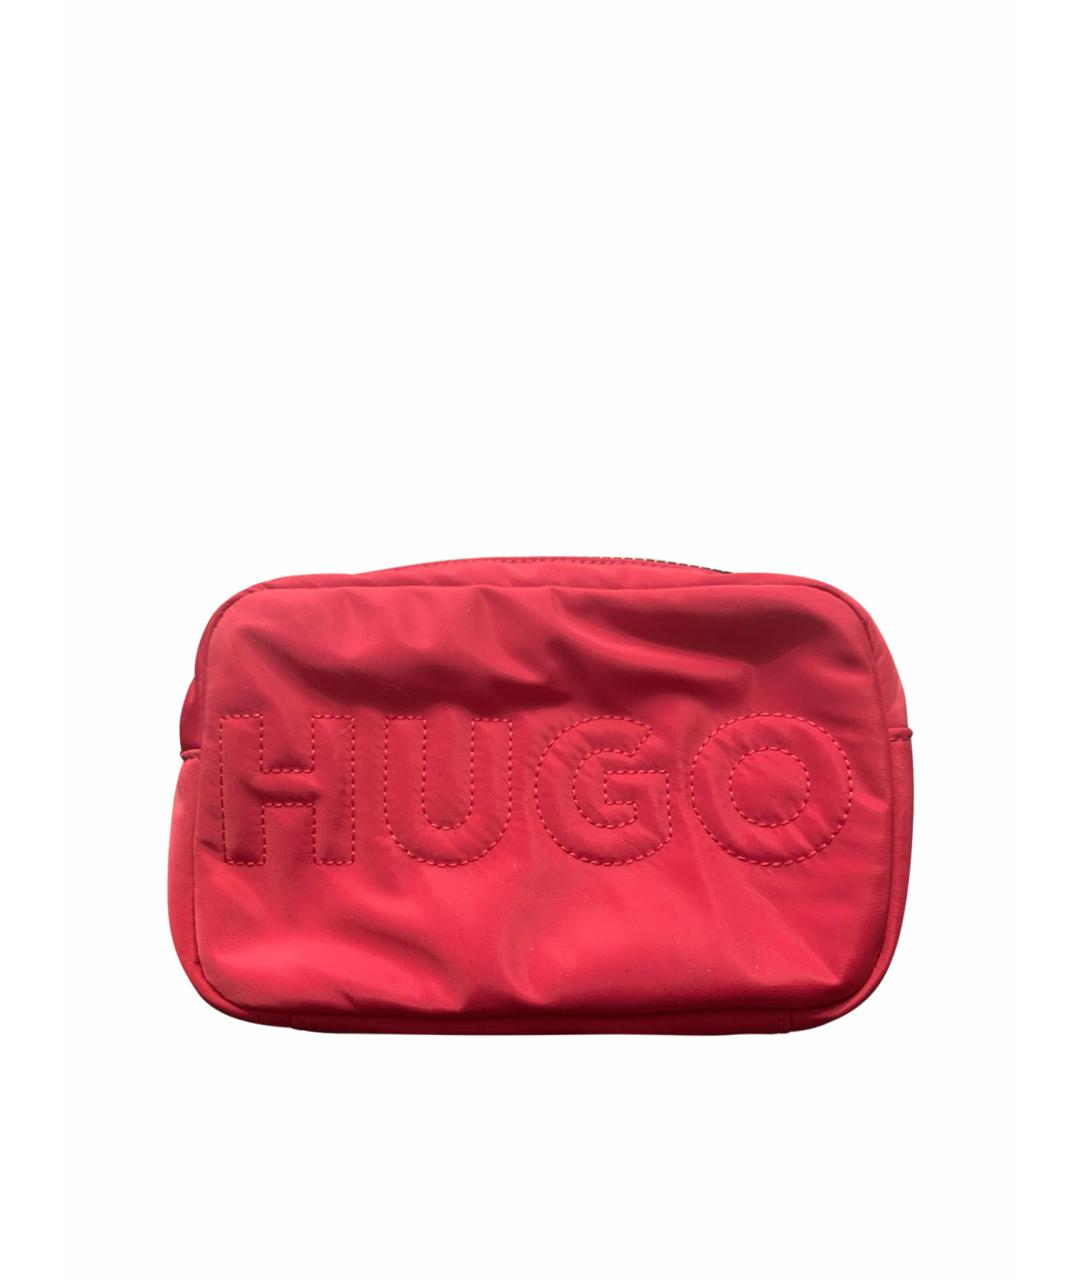 HUGO BOSS Фуксия синтетическая сумка через плечо, фото 1